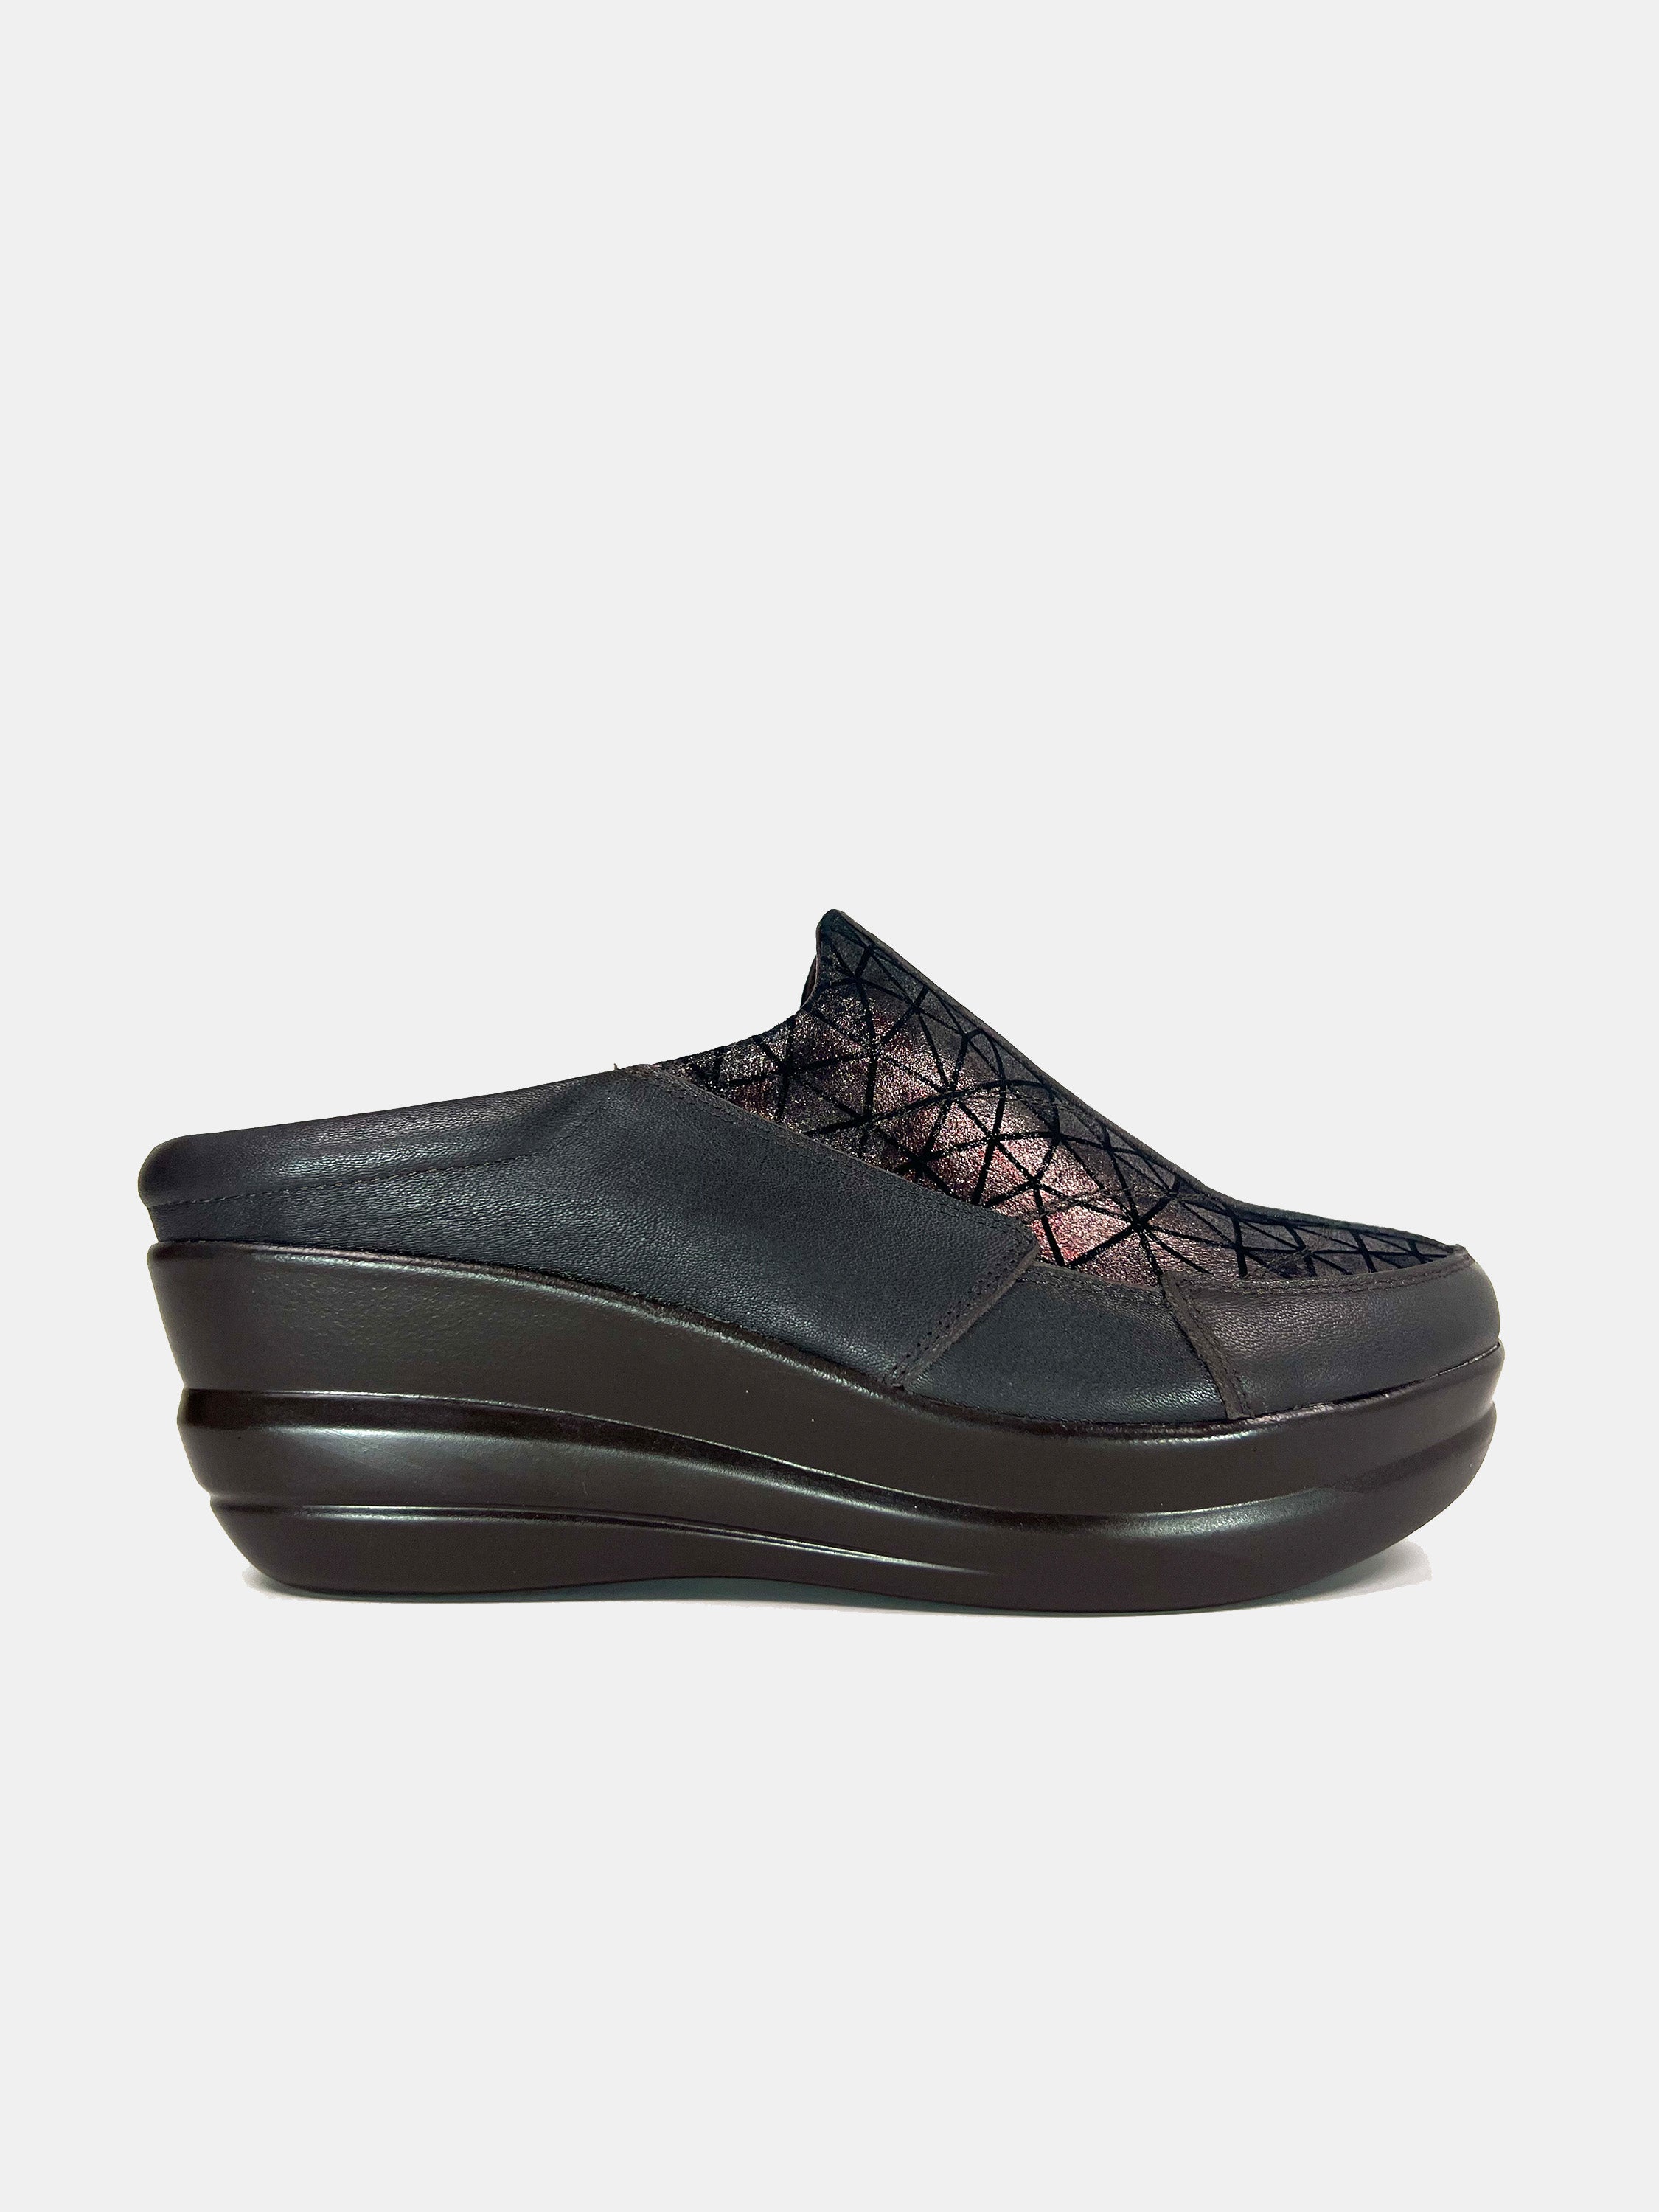 Michelle Morgan 19009-B1 Women's Mule Shoes #color_Brown